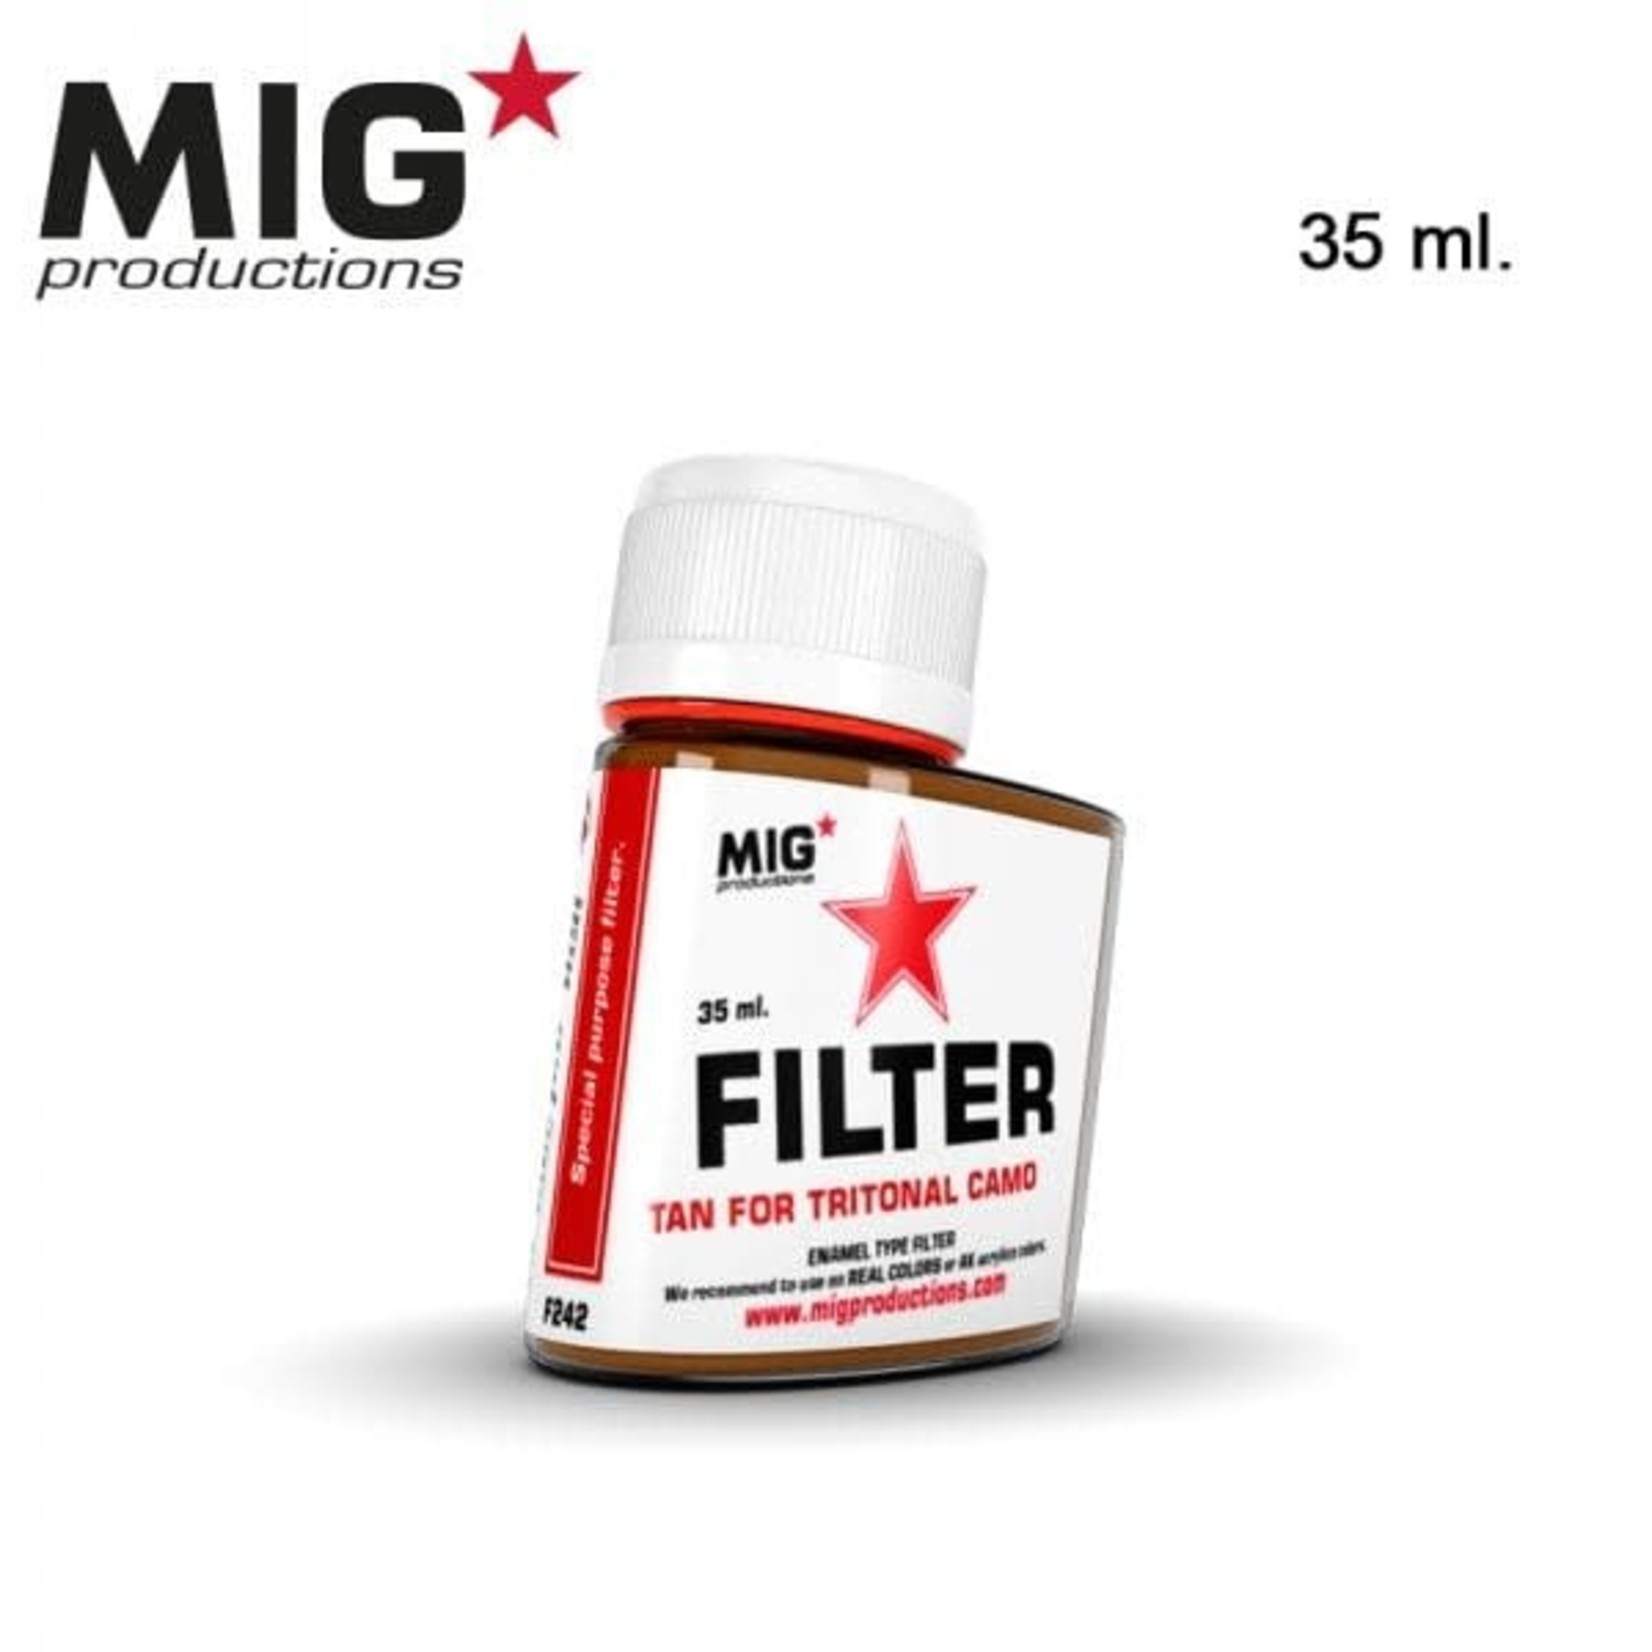 MIG Productions MIG Filter F-242 Tan for Tritonal Camo 35ml